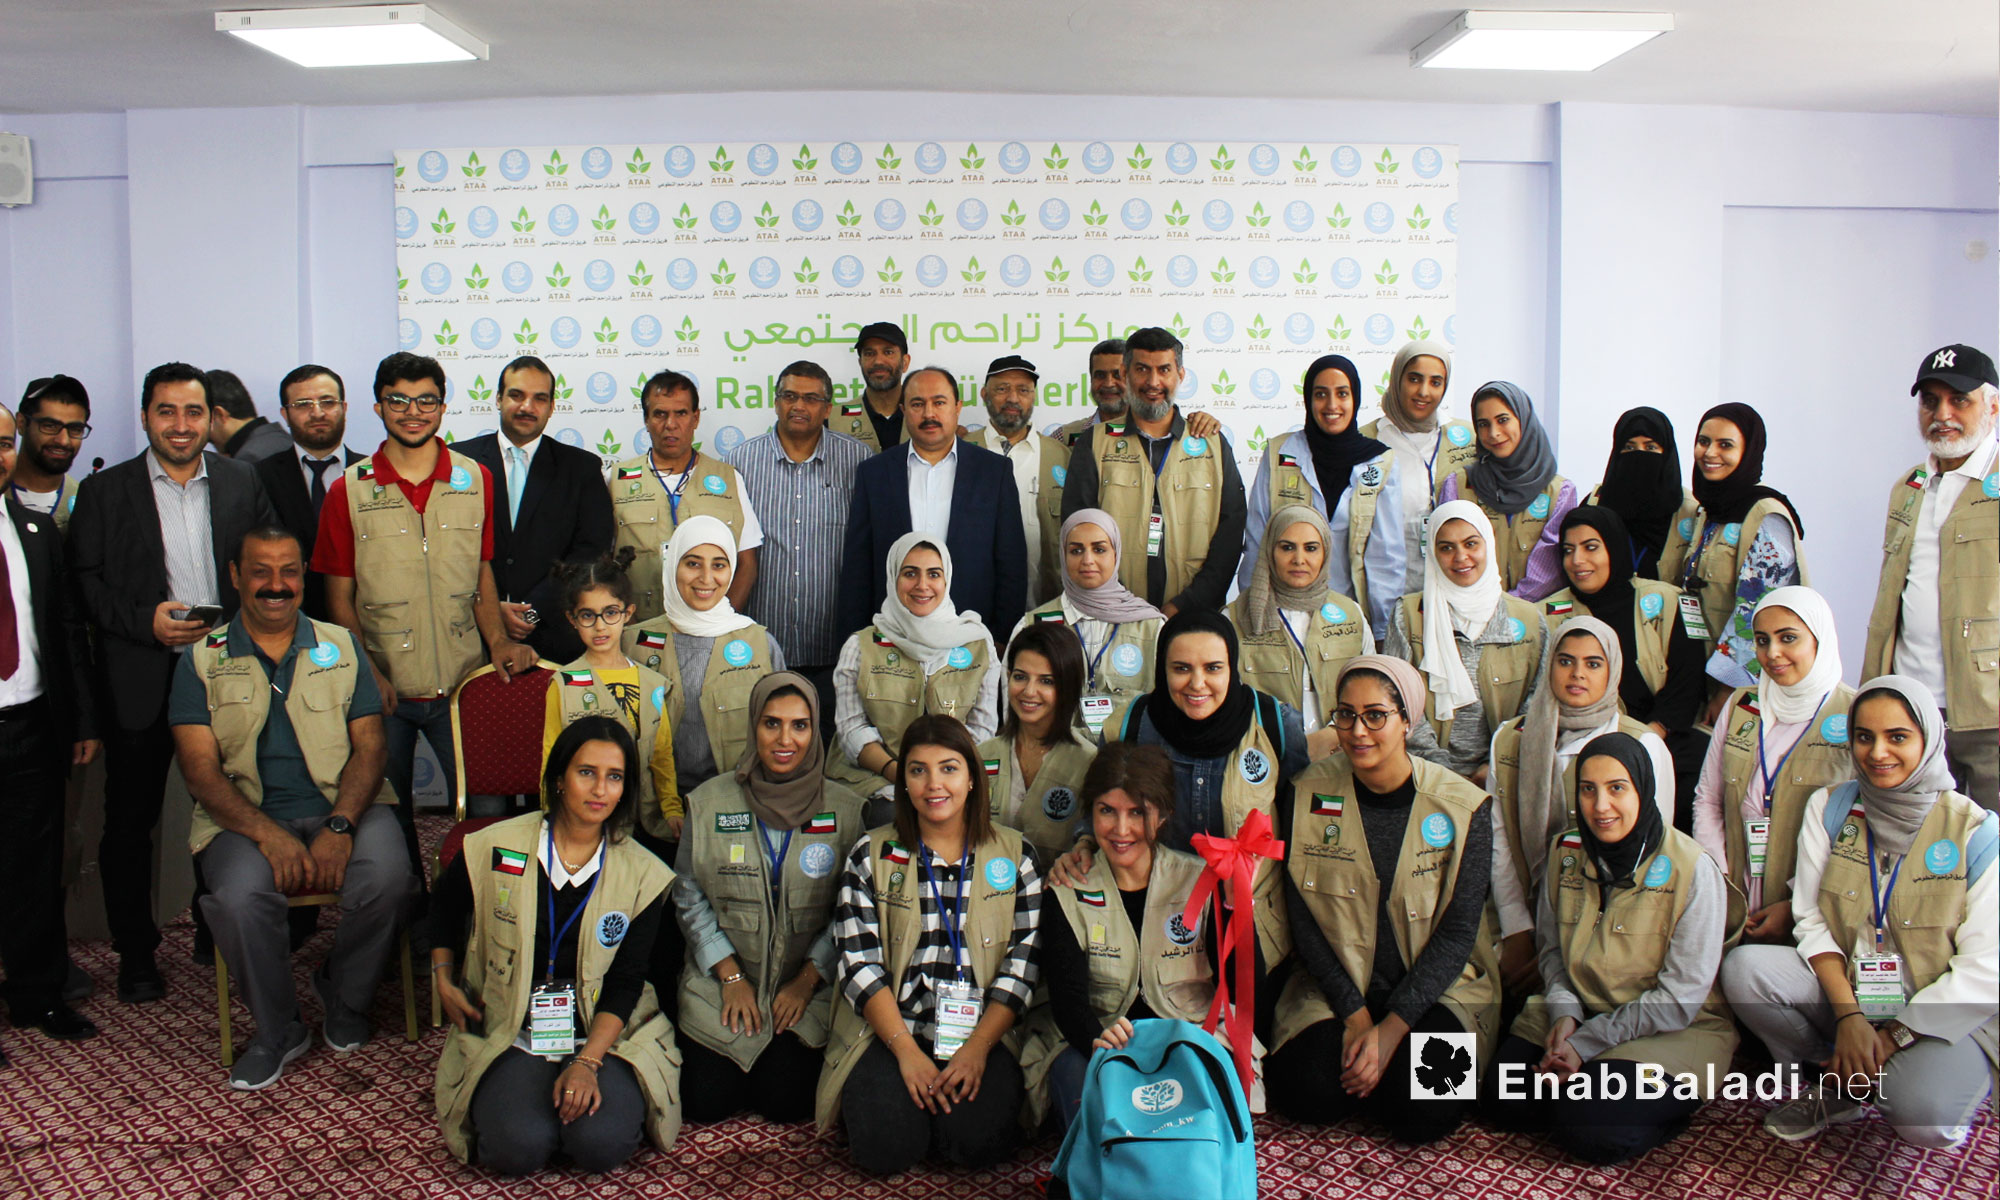 افتتاح مركز "تراحم 2" المجتمعي في مدينة أورفة التركية برعاية جمعية "عطاء" للإغاثة الإنسانية وفريق "تراحم" الكويتي - 27 تشرين الأول 2017 (عنب بلدي)
